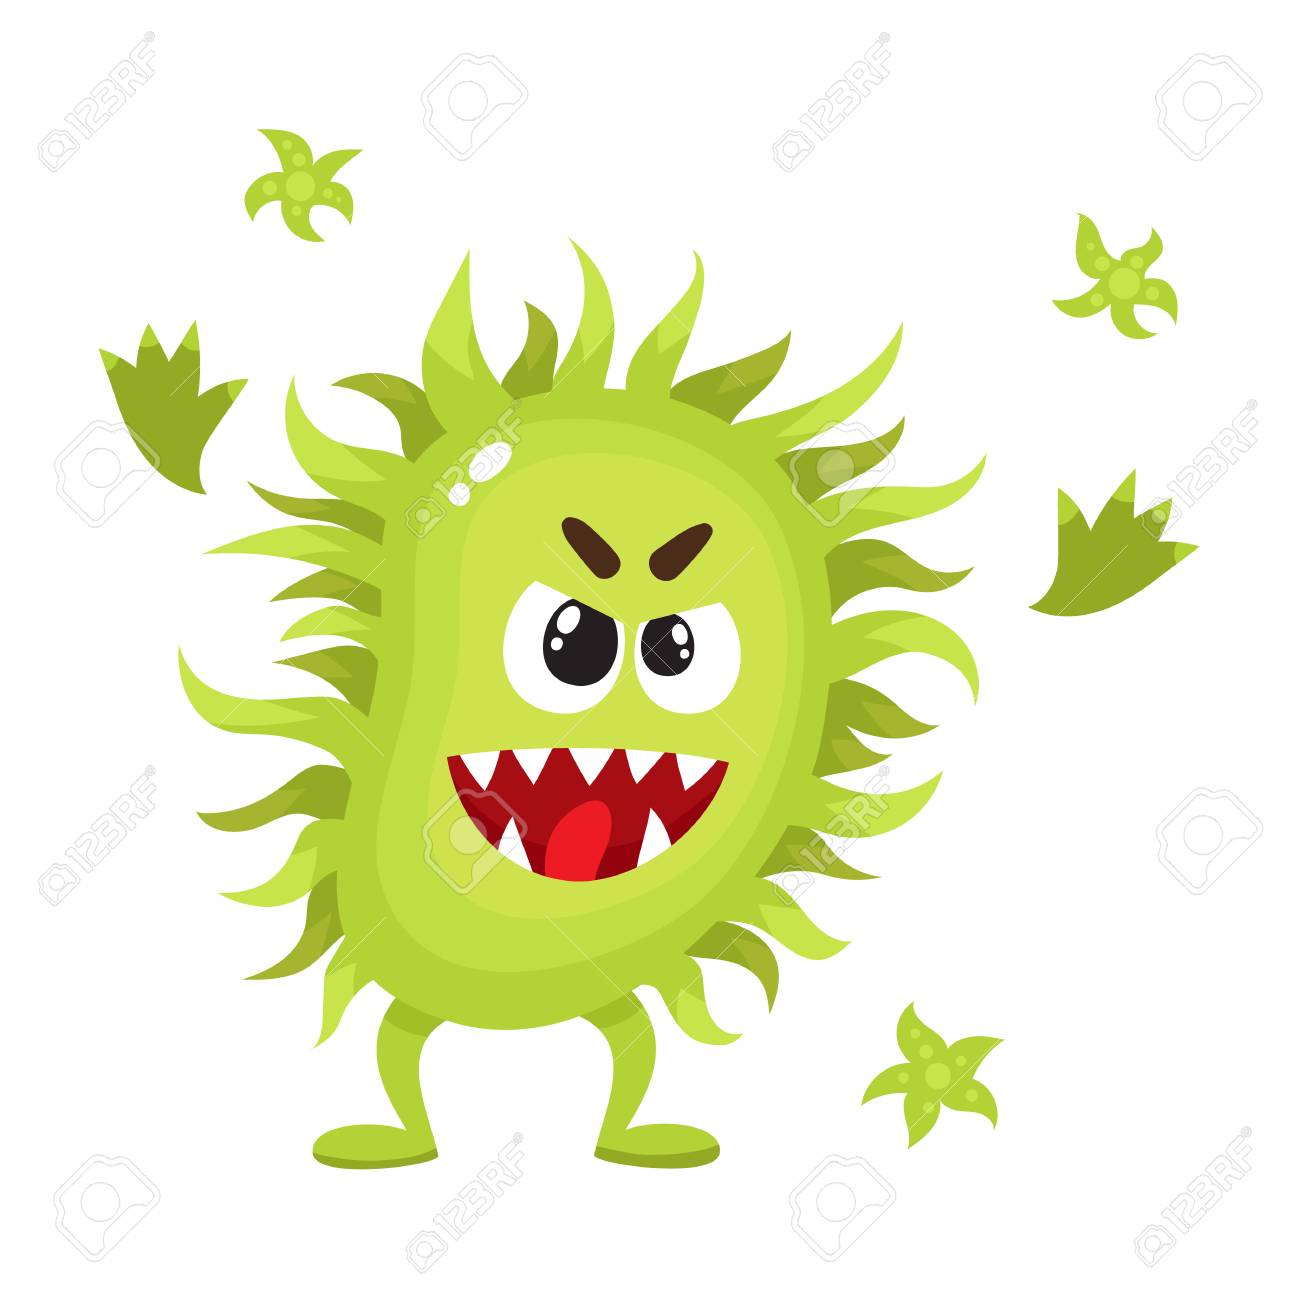 82433488-lelijk-groen-virus-kiem-bacteri_nkarakter-met-menselijk-gezicht-beeldverhaal-vectorillustratie-op-witt.jpg